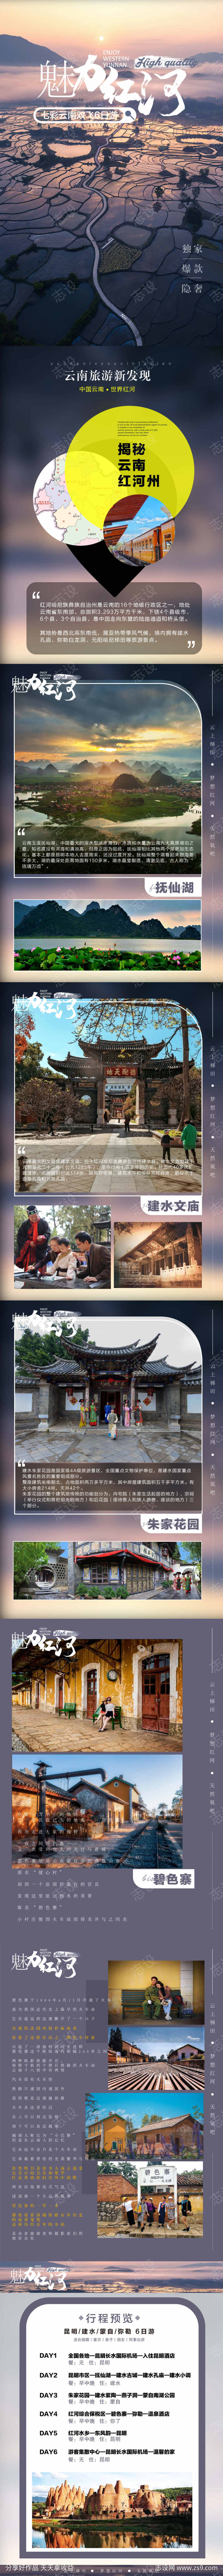 云南红河旅游海报